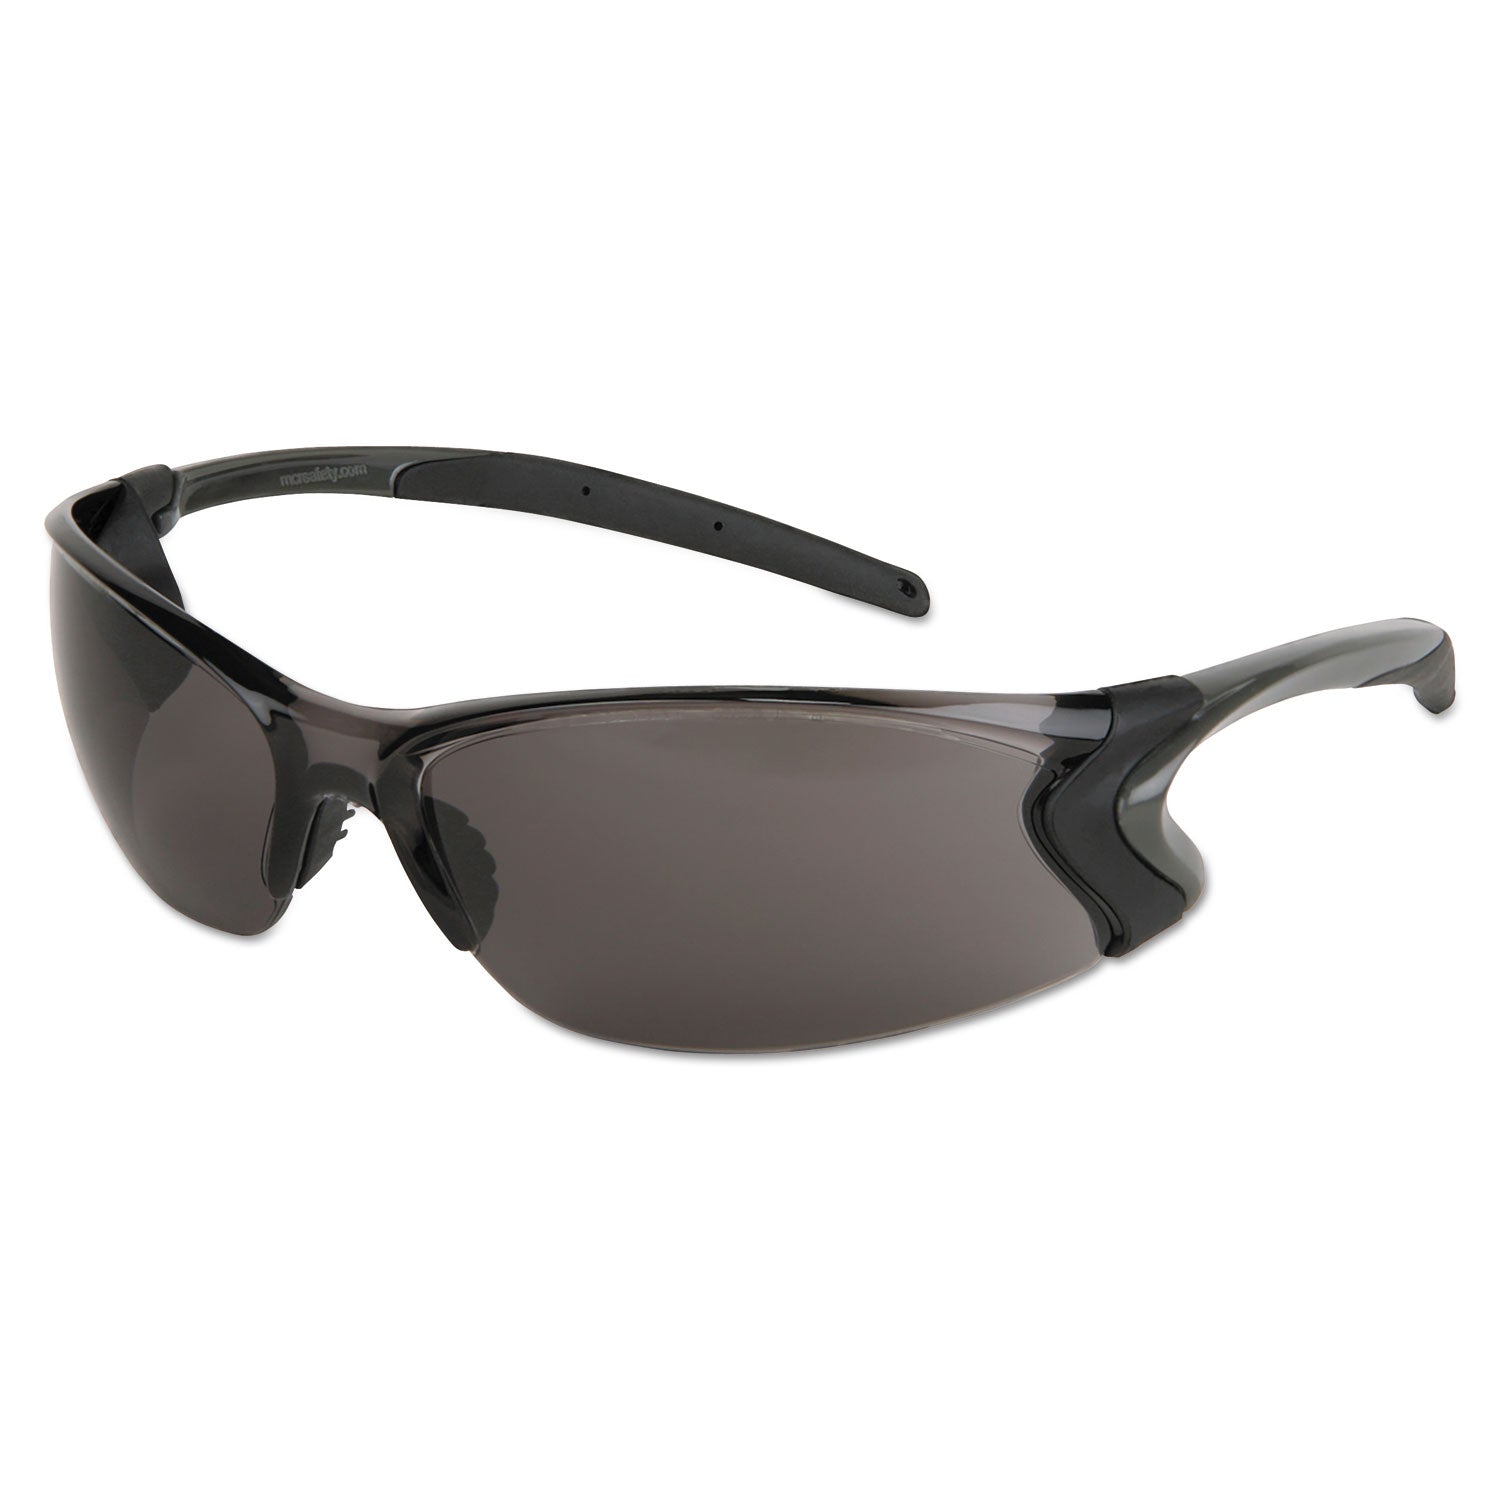 backdraft-glasses-clear-frame-hard-coat-gray-lens_crwbd112p - 1